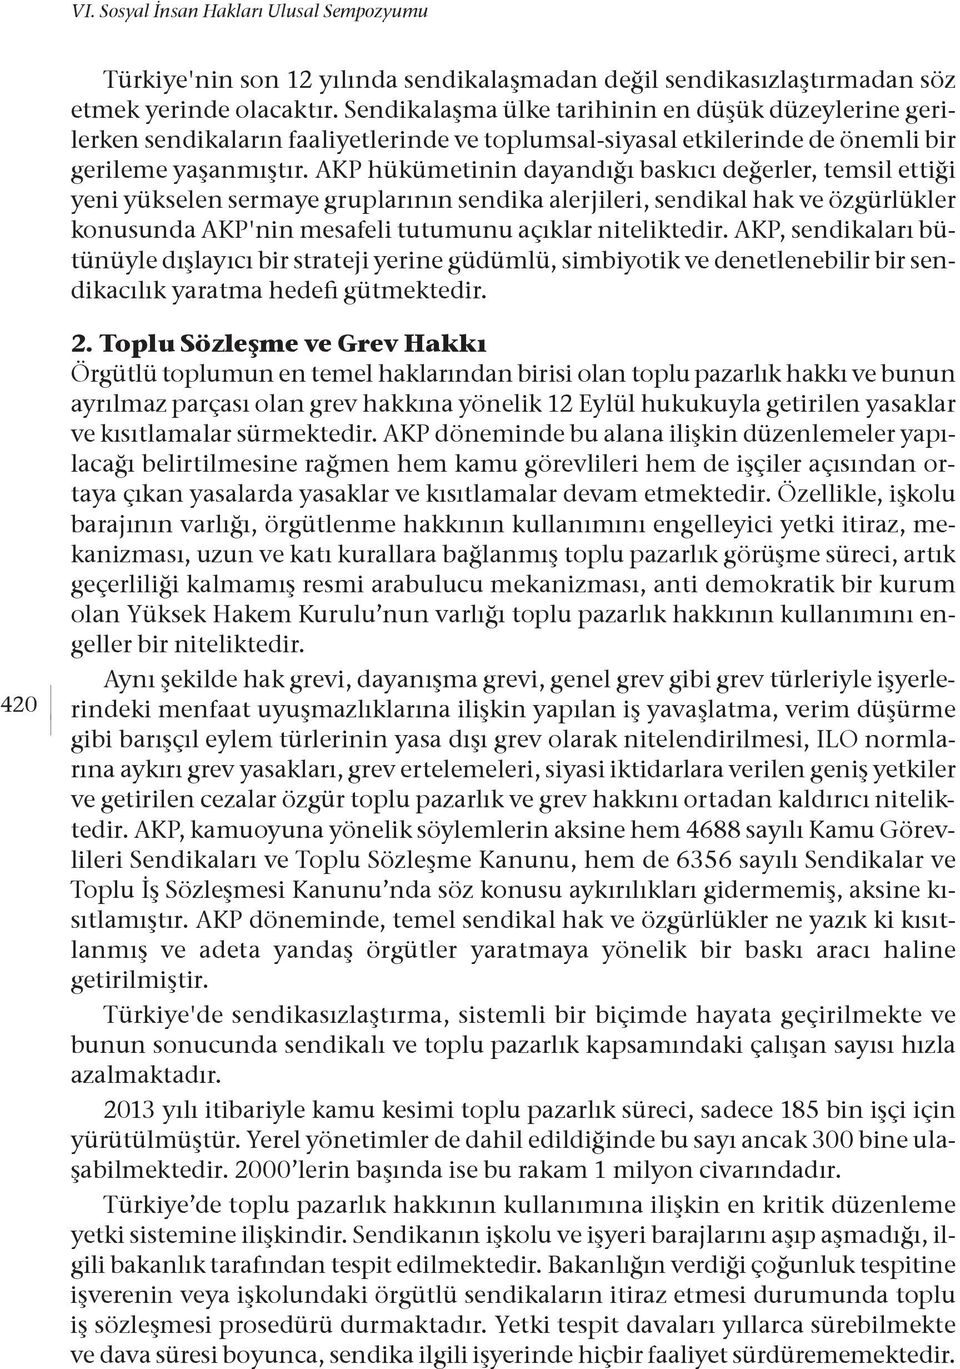 AKP hükümetinin dayandığı baskıcı değerler, temsil ettiği yeni yükselen sermaye gruplarının sendika alerjileri, sendikal hak ve özgürlükler konusunda AKP'nin mesafeli tutumunu açıklar niteliktedir.